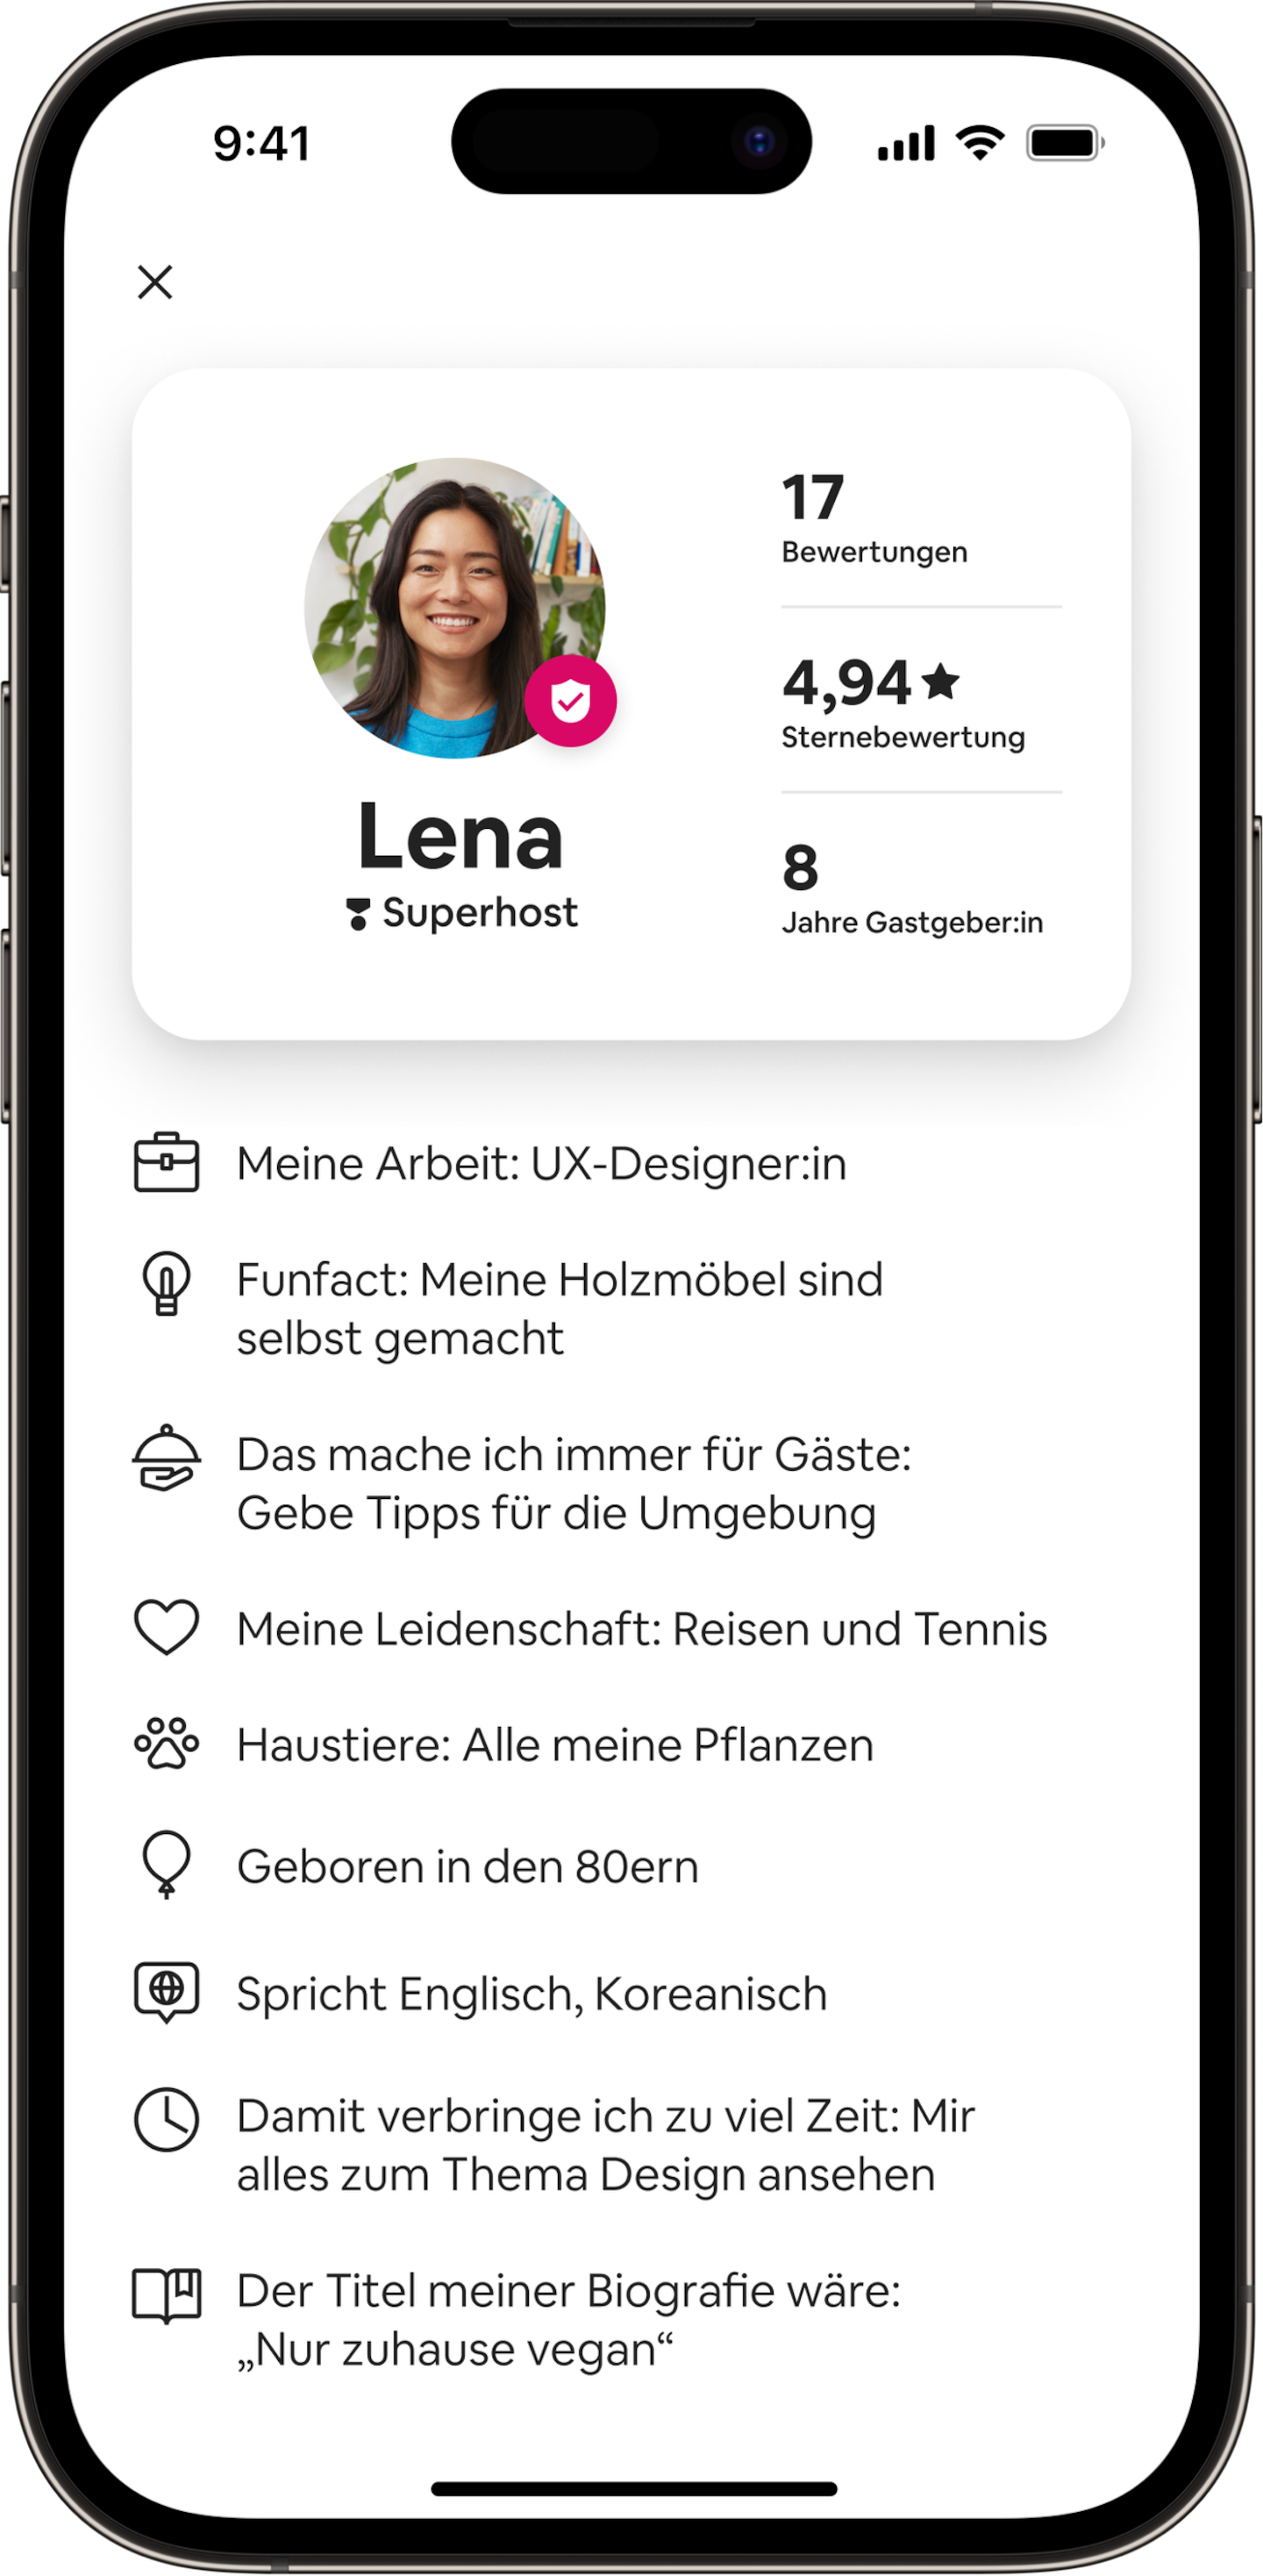 Eine Animation eines Smartphones mit dem Gastgeber:innen-Pass einer Gastgeberin namens Lena. Der Pass scrollt nach unten und gibt Informationen über sie preis – über ihre Arbeit als UX-Designerin und ihre Freude an Möbelbau, Reisen, Tennis und mehr.